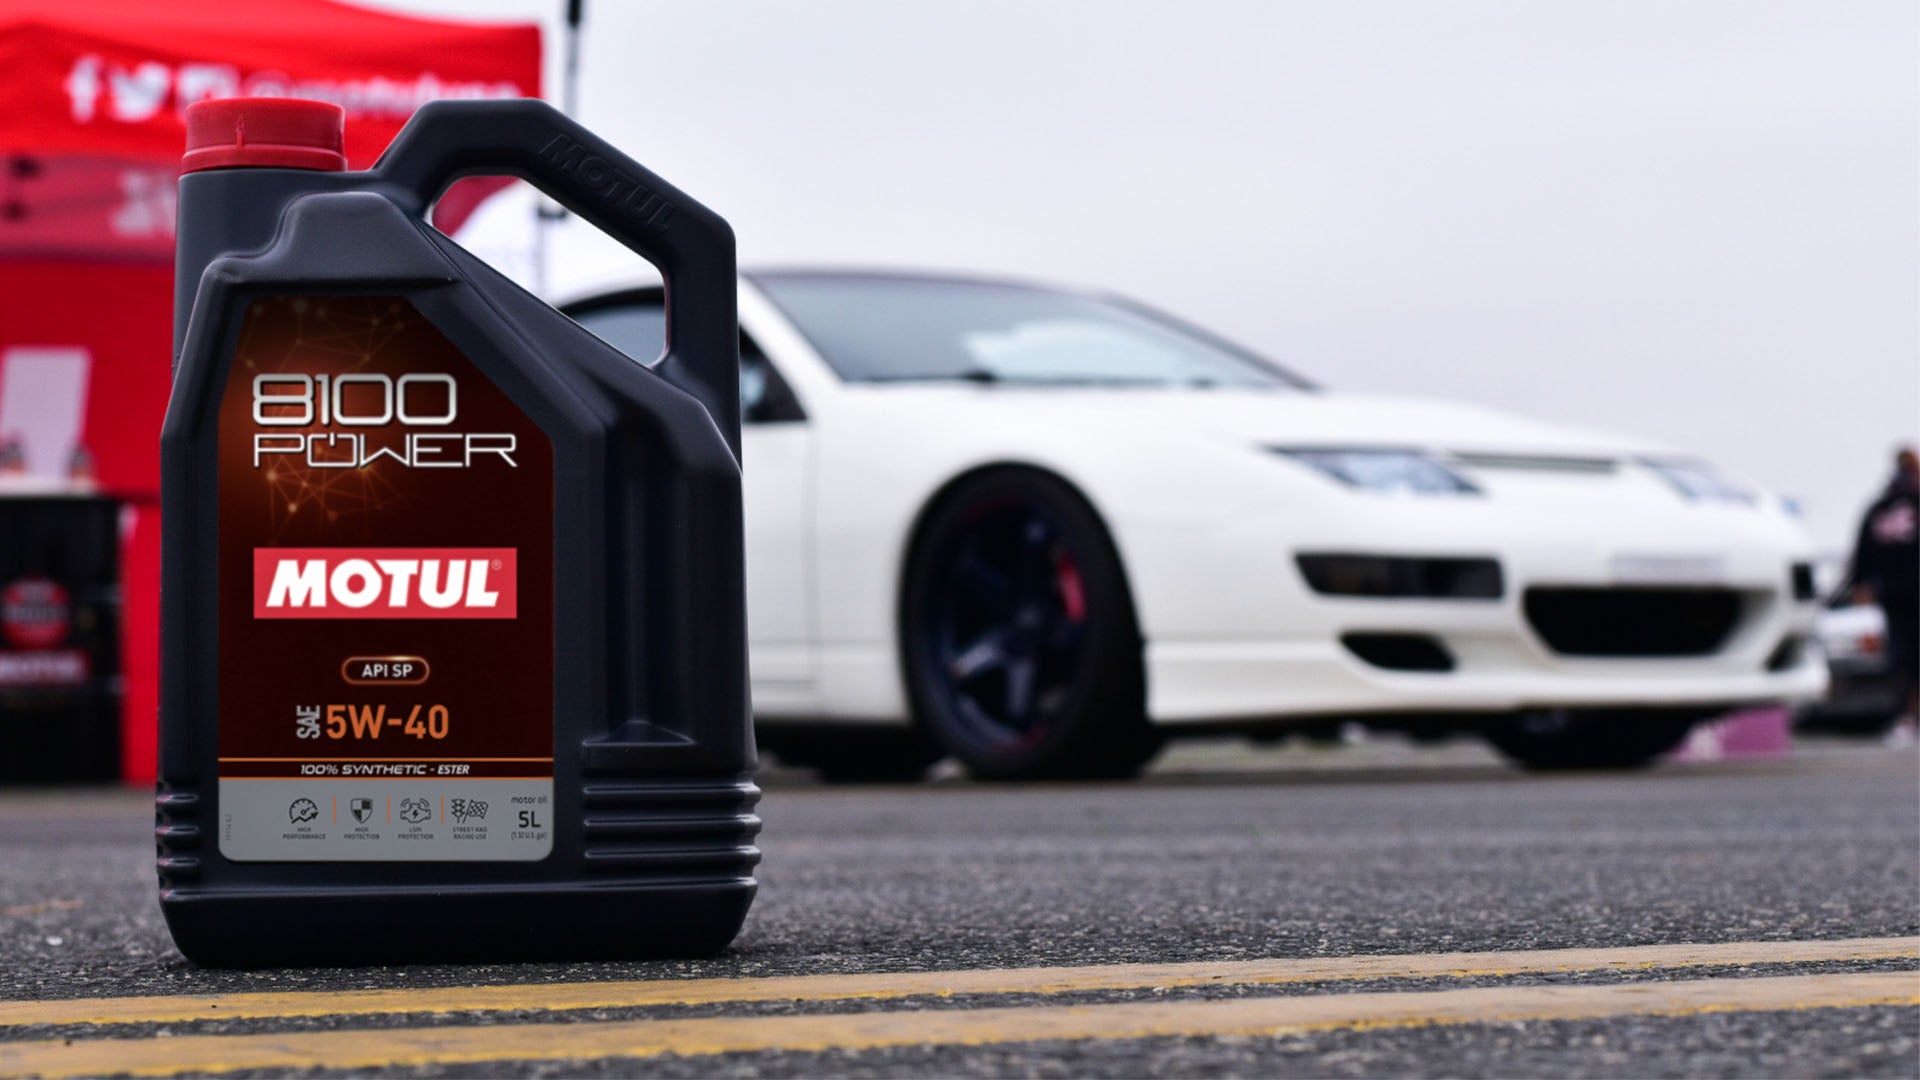 Motul Releases New 8100 Power Line of Motor Oils